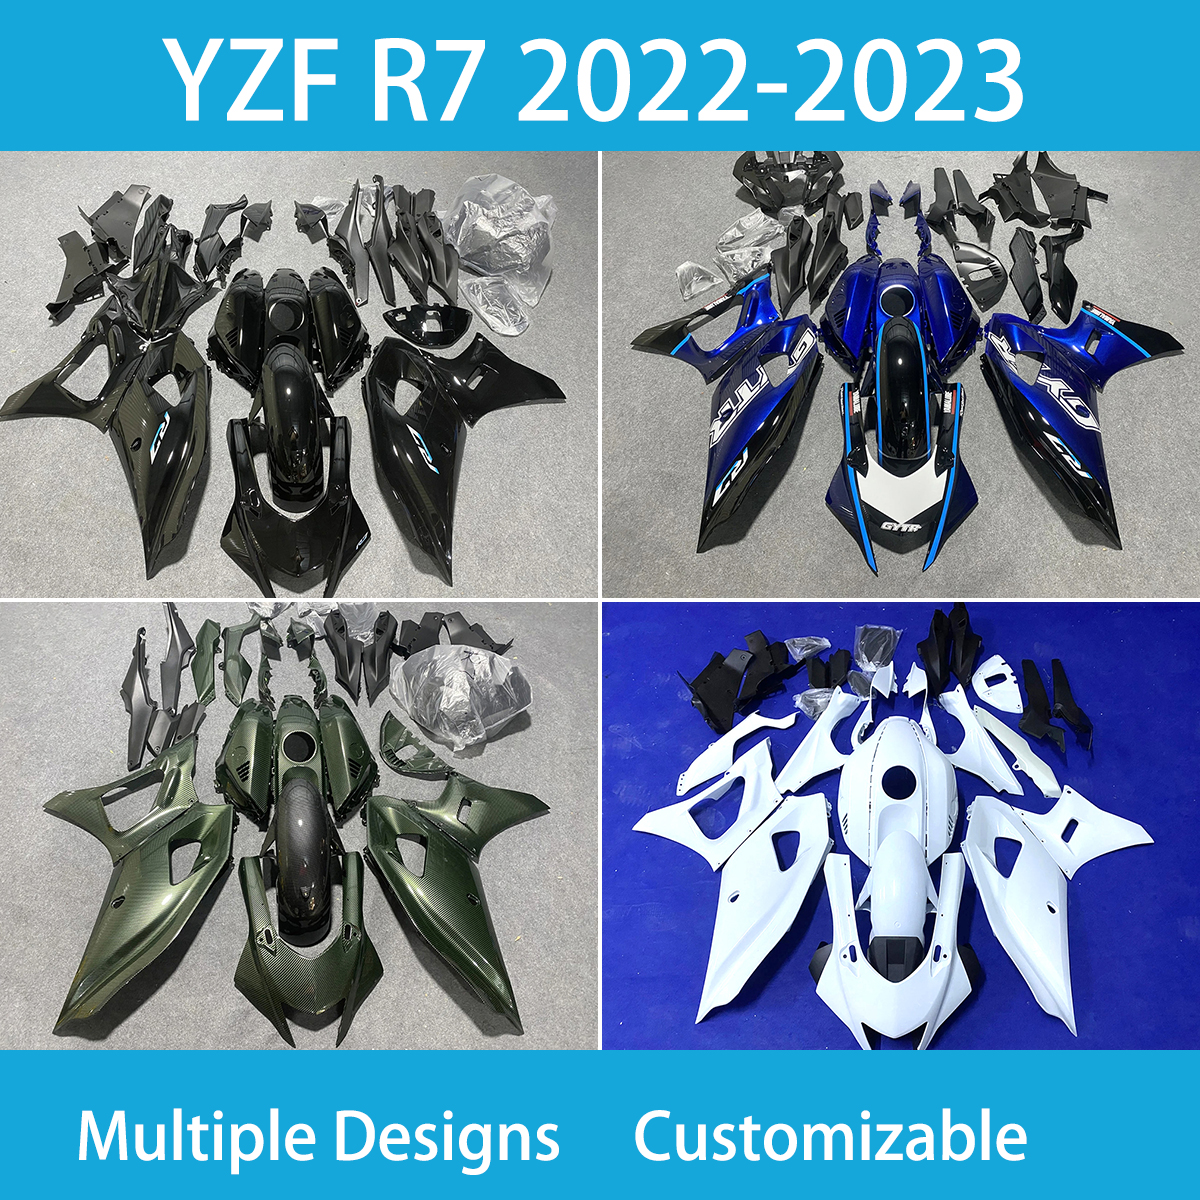 Yamaha için Yüksek Kaliteli Kaplama Kiti YZFR7 2022-2023 Yıl 100 Uyum Enjeksiyon Kalıbı Kovan Siyah Motosiklet Seti YZF R7 22 23 Yıllık Abs Plastik Gövdeli